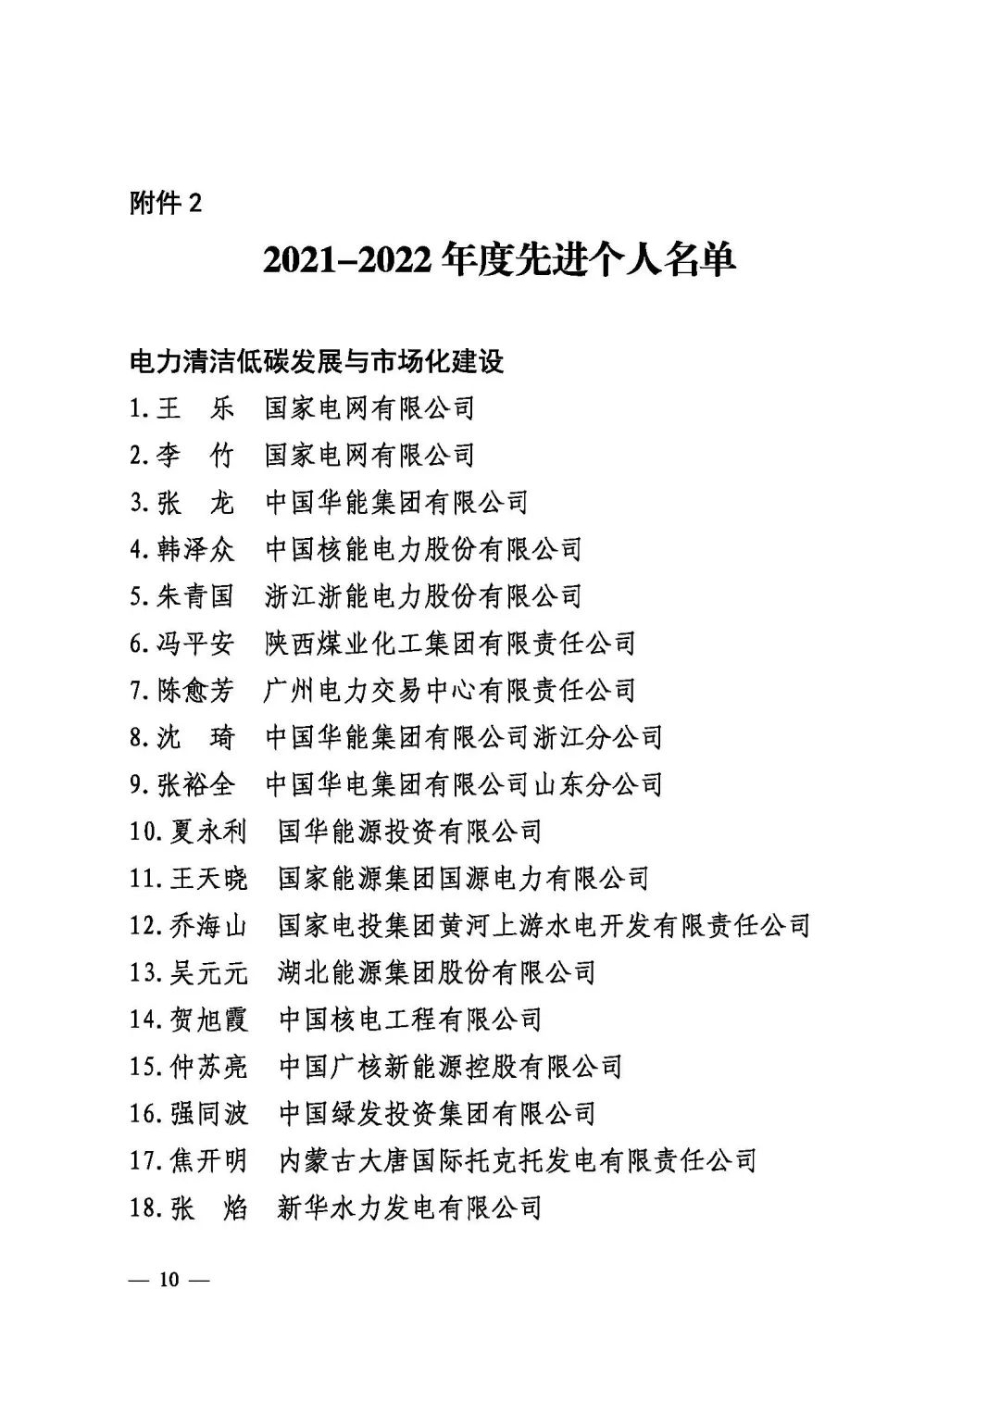 中电联表彰2021-2022年度先进会员企业、先进个人-12